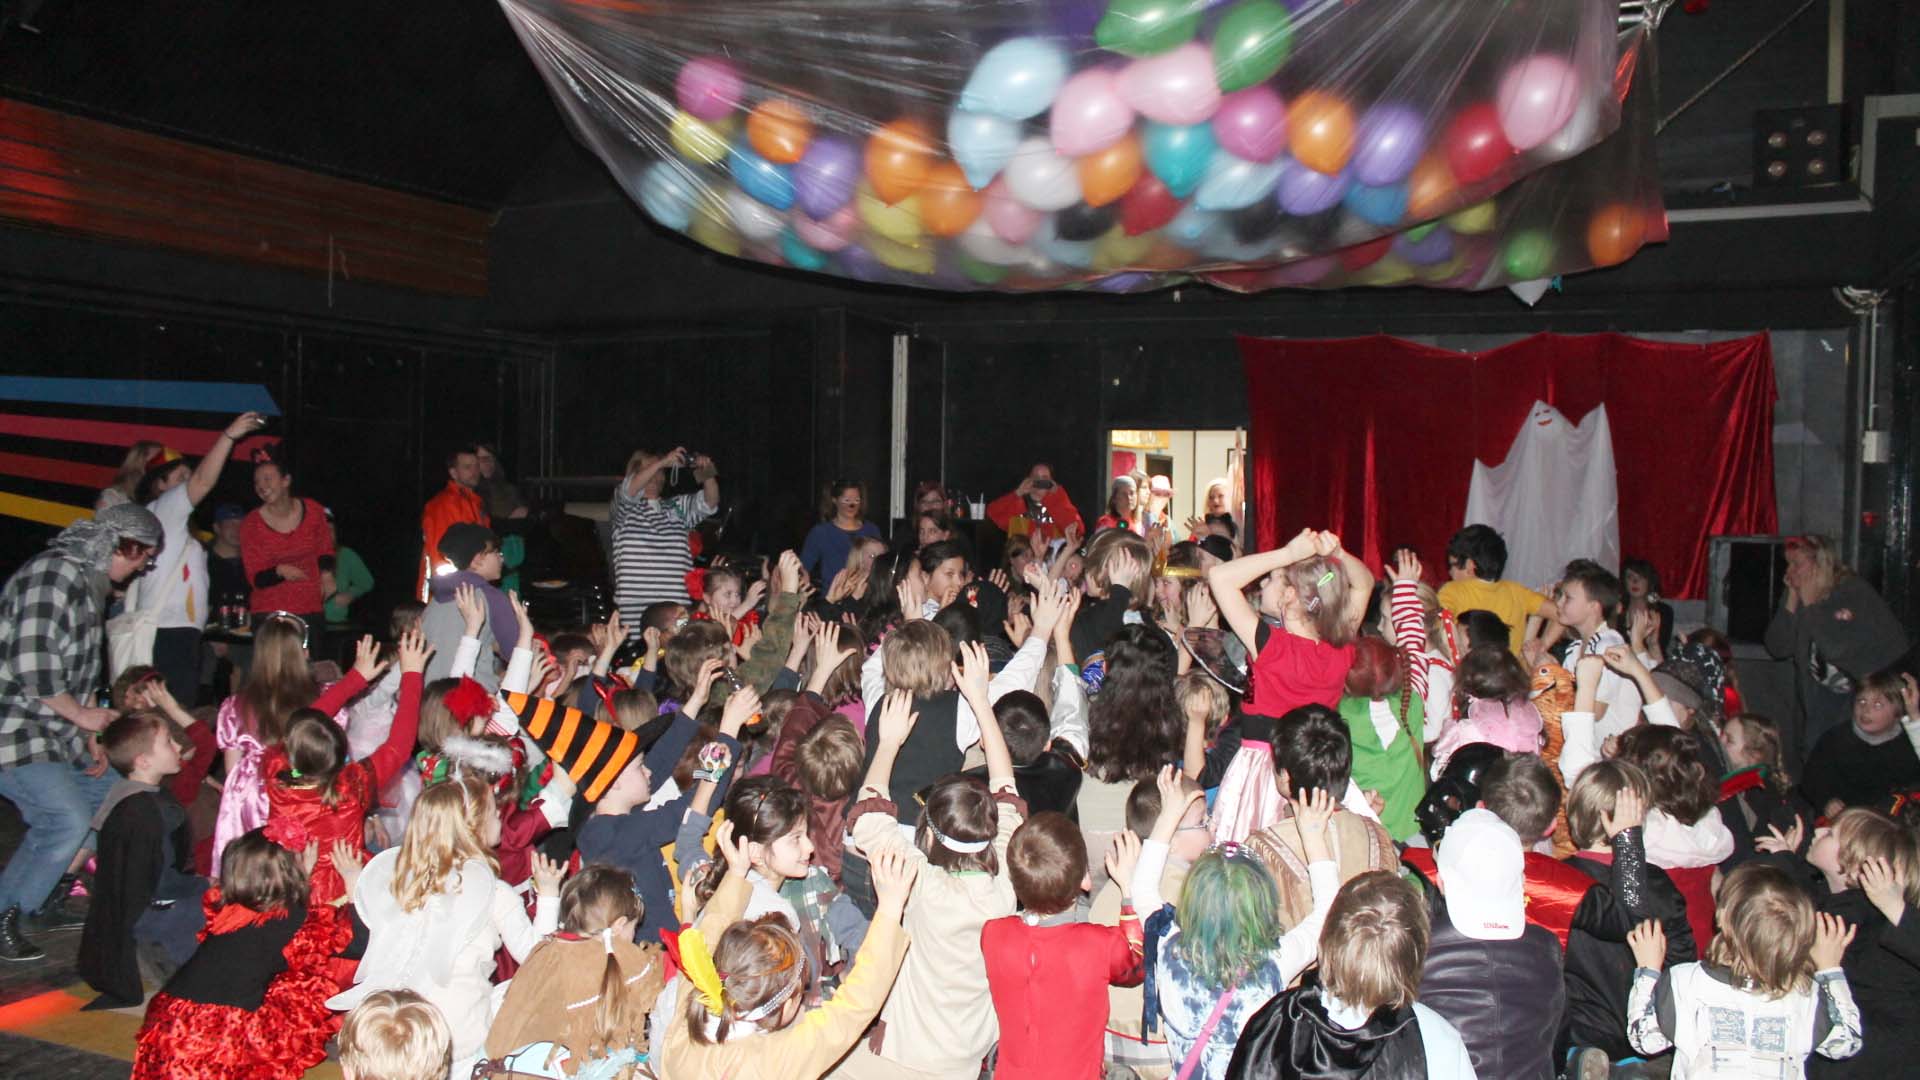 Viele Kinder greifen nach Luftballons, die von der Decke in einer Folie hängen.